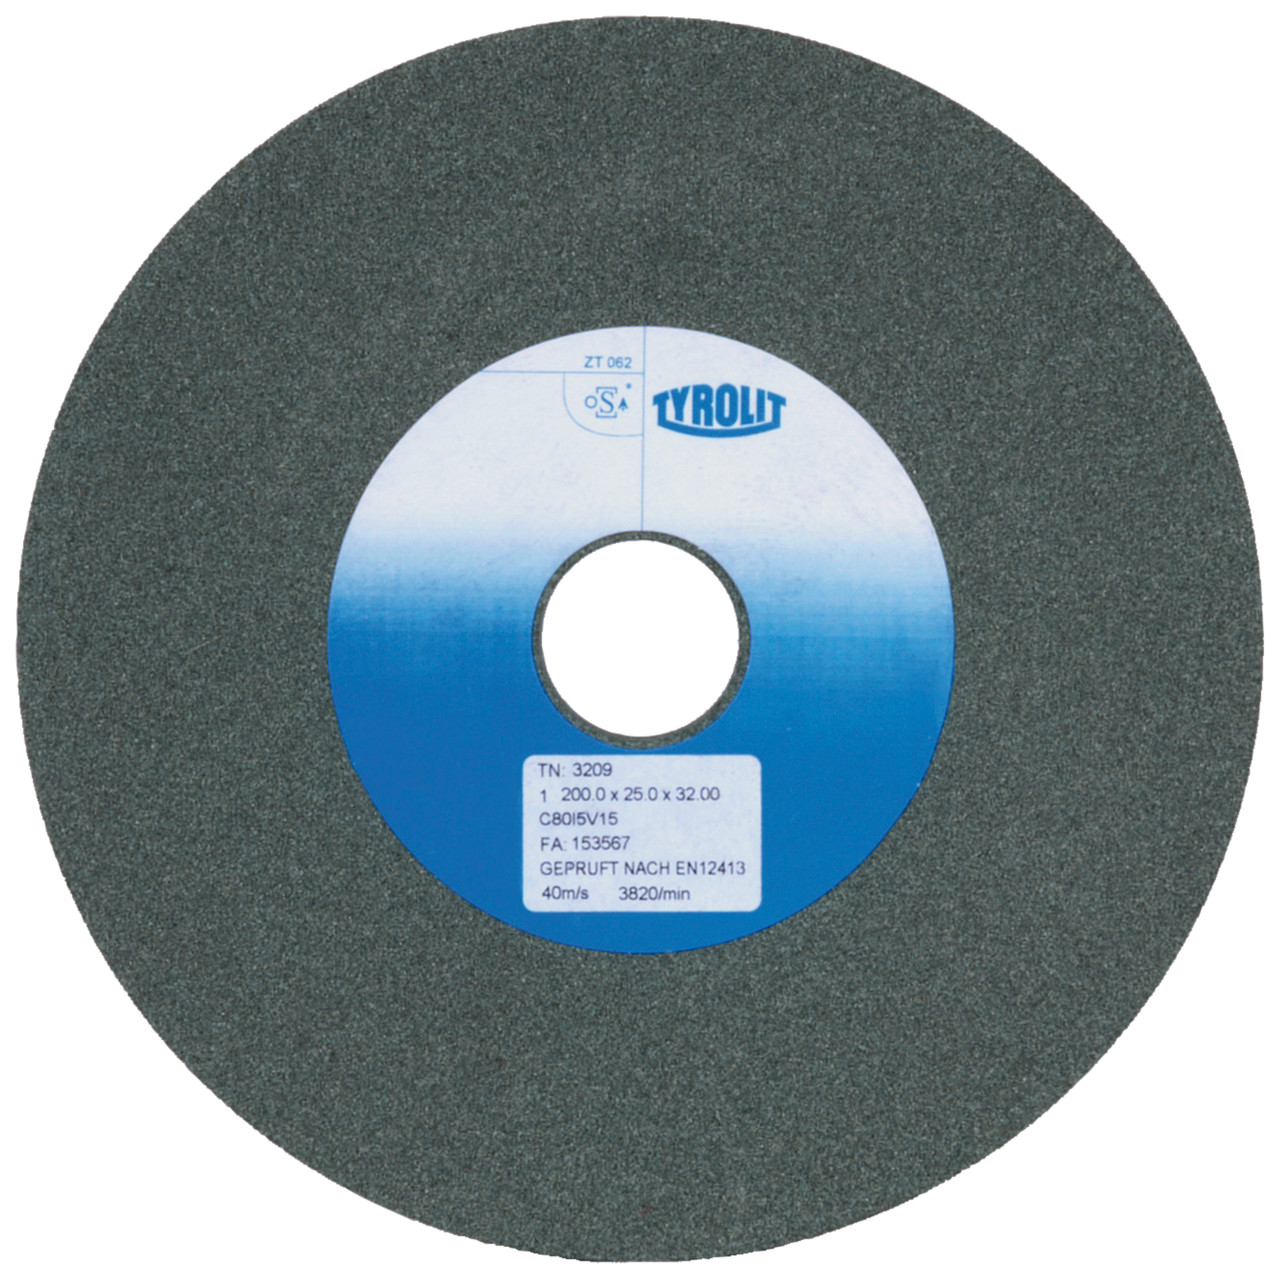 TYROLIT discos abrasivos cerámicos convencionales DxDxH 175x25x51 Para metal duro y fundición, forma: 1, Art. 9653